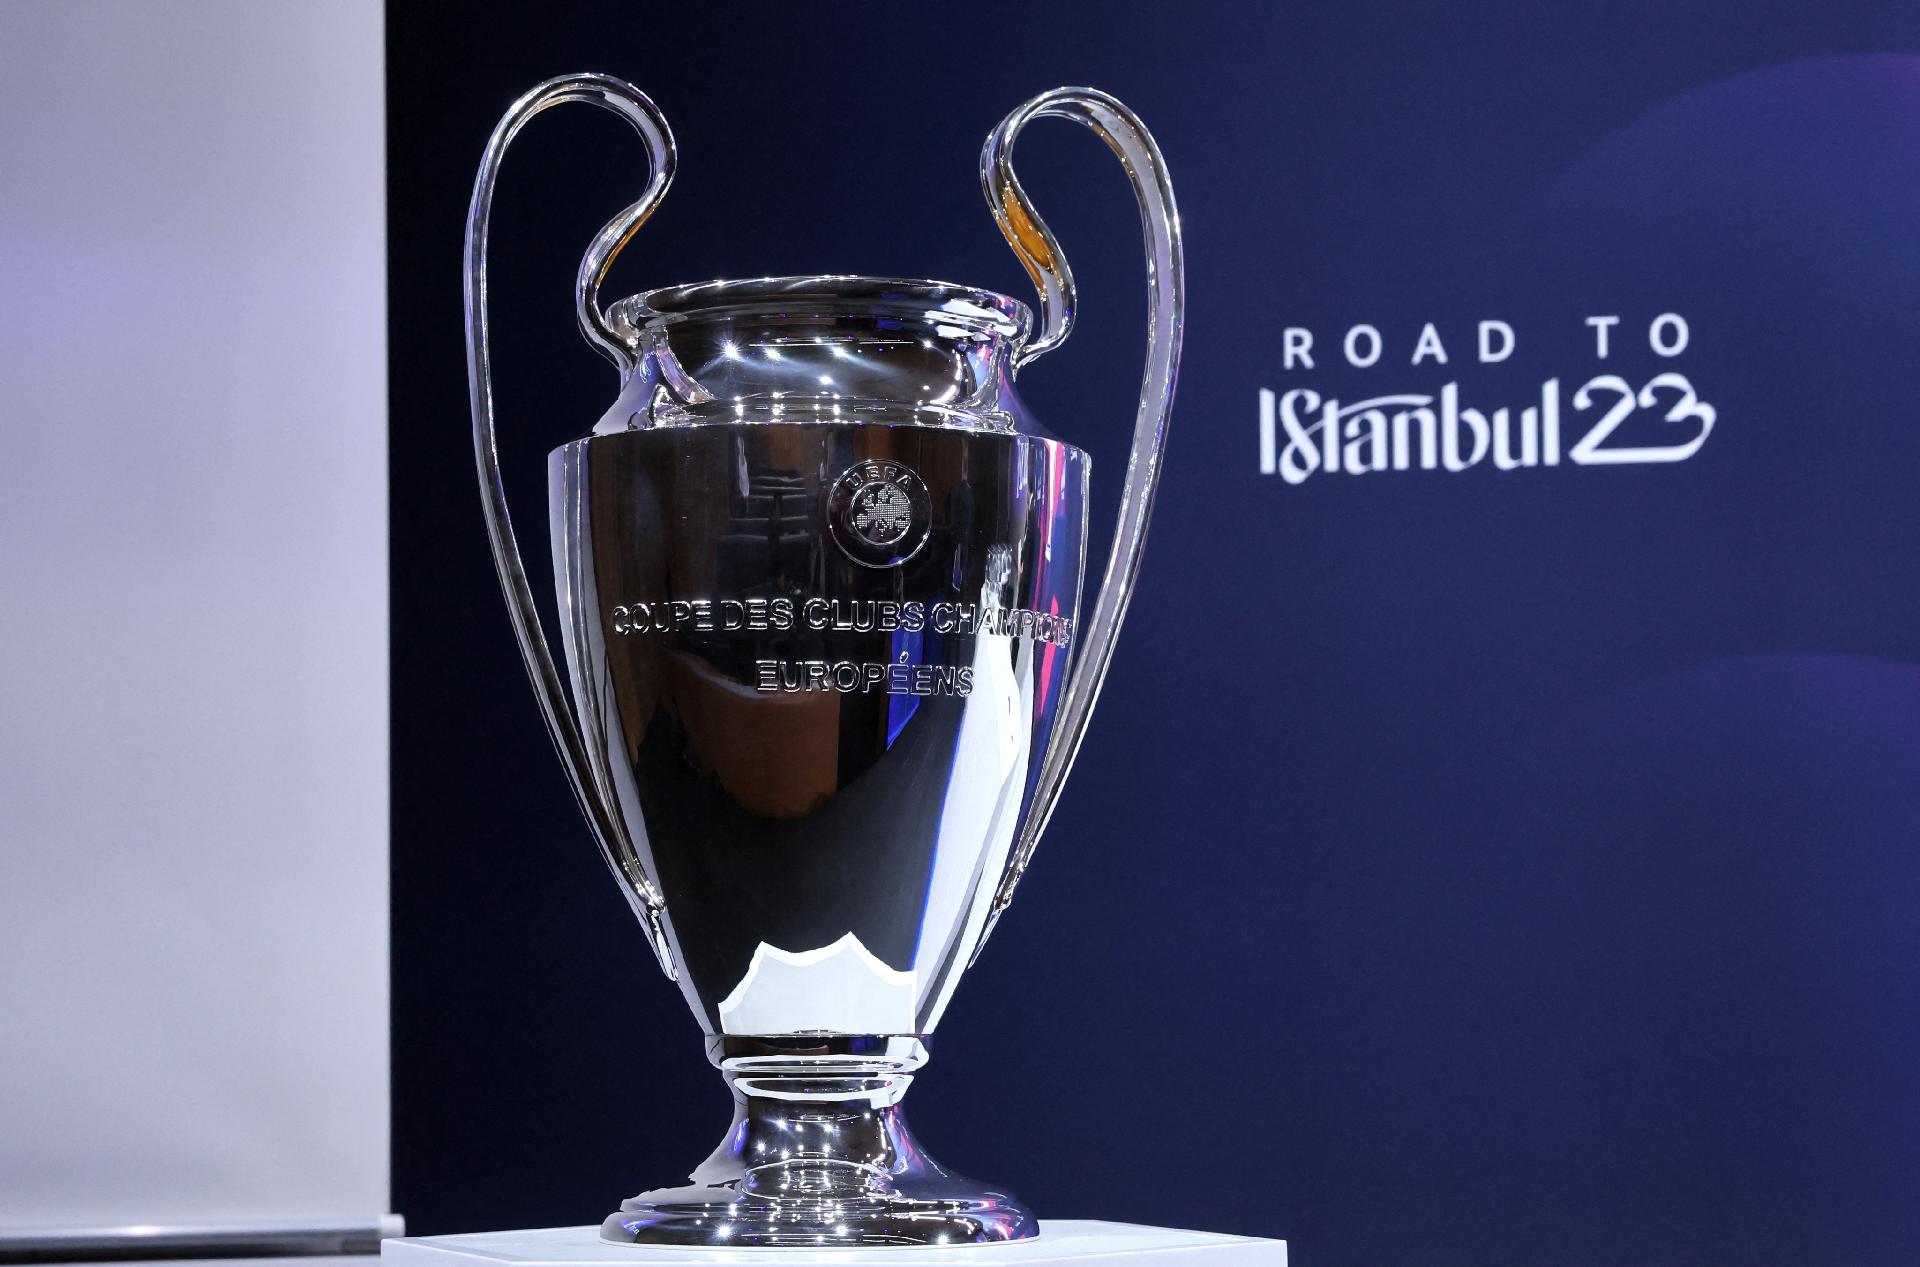 Programação dos jogos de volta das oitavas de final da UEFA Champions  League